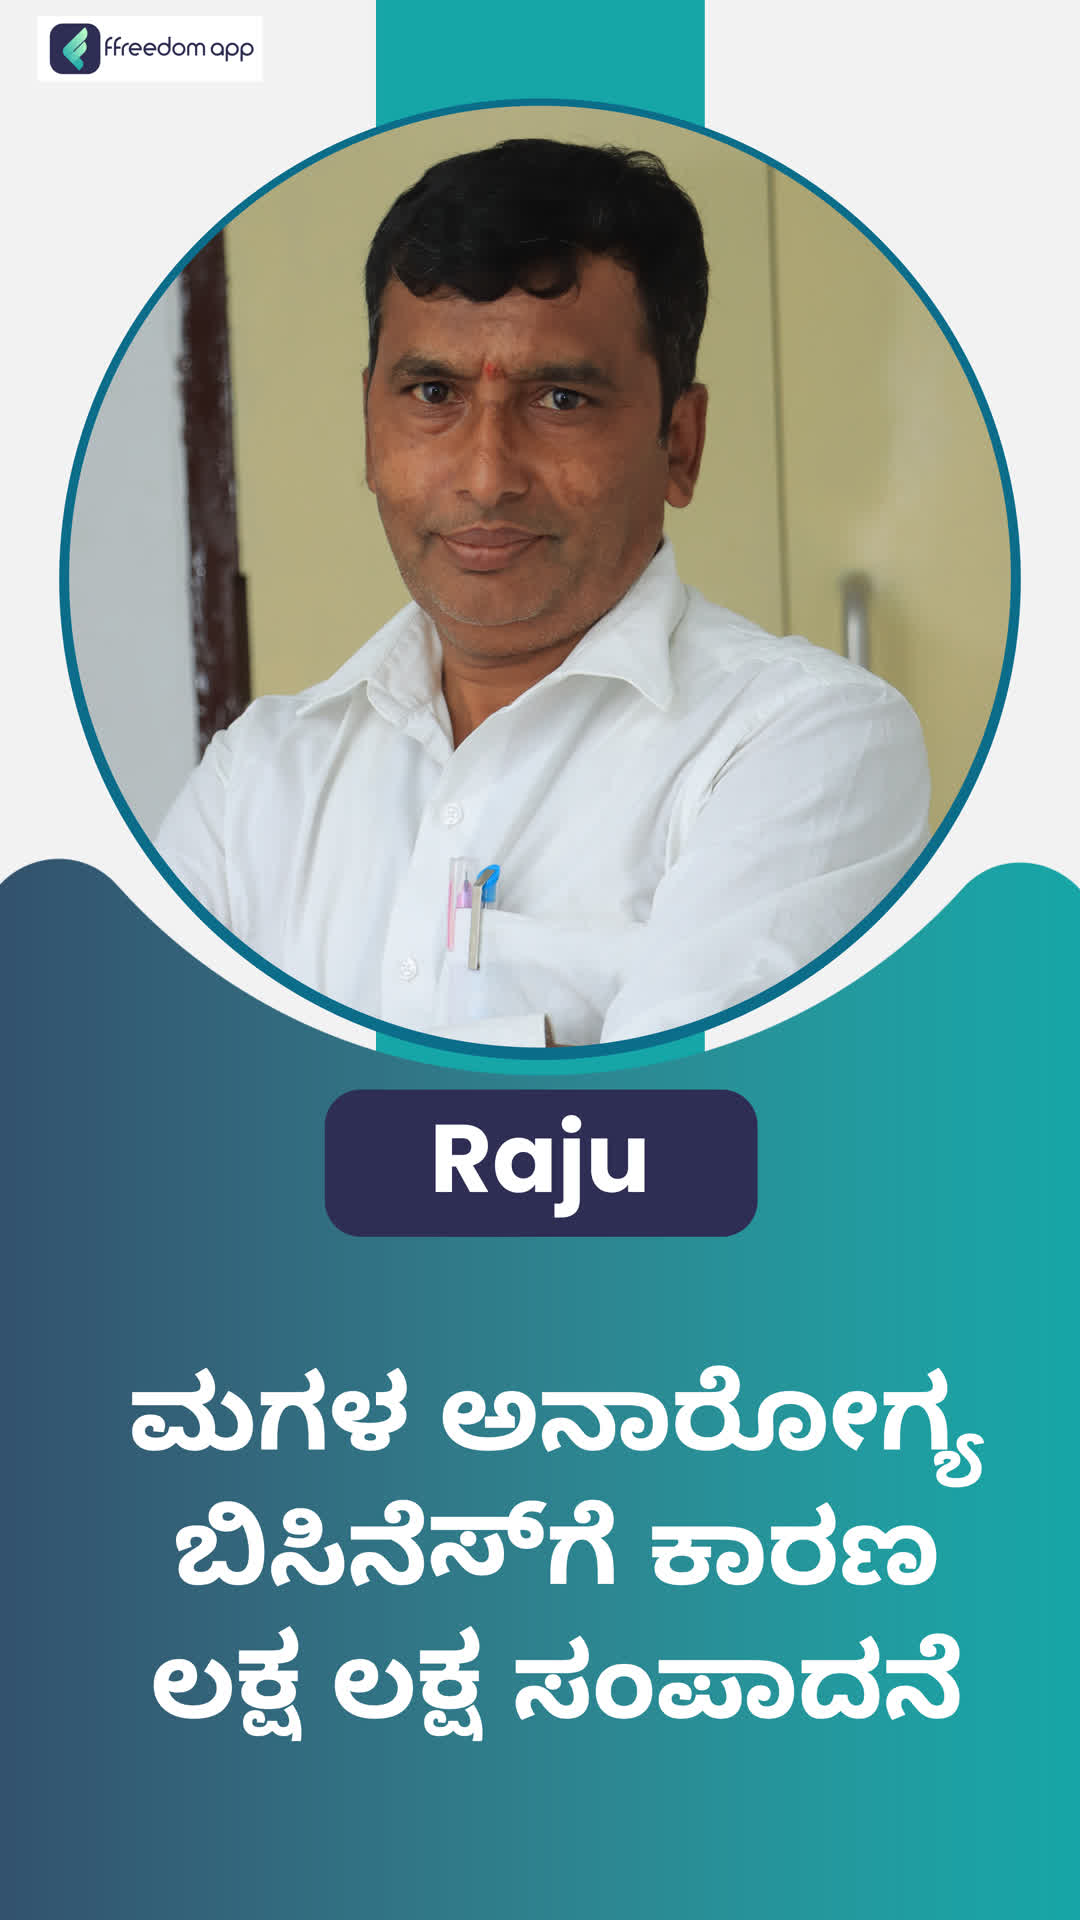 Raju's Honest Review of ffreedom app - Tumakuru ,Karnataka